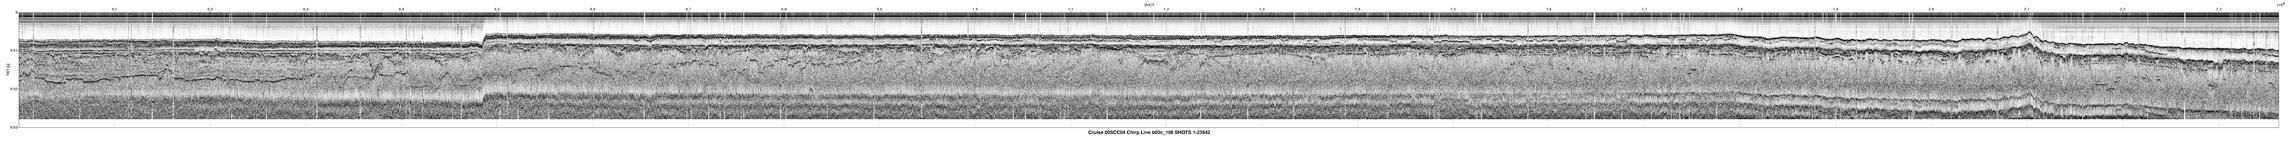 00SCC04 b00c_106 seismic profile image